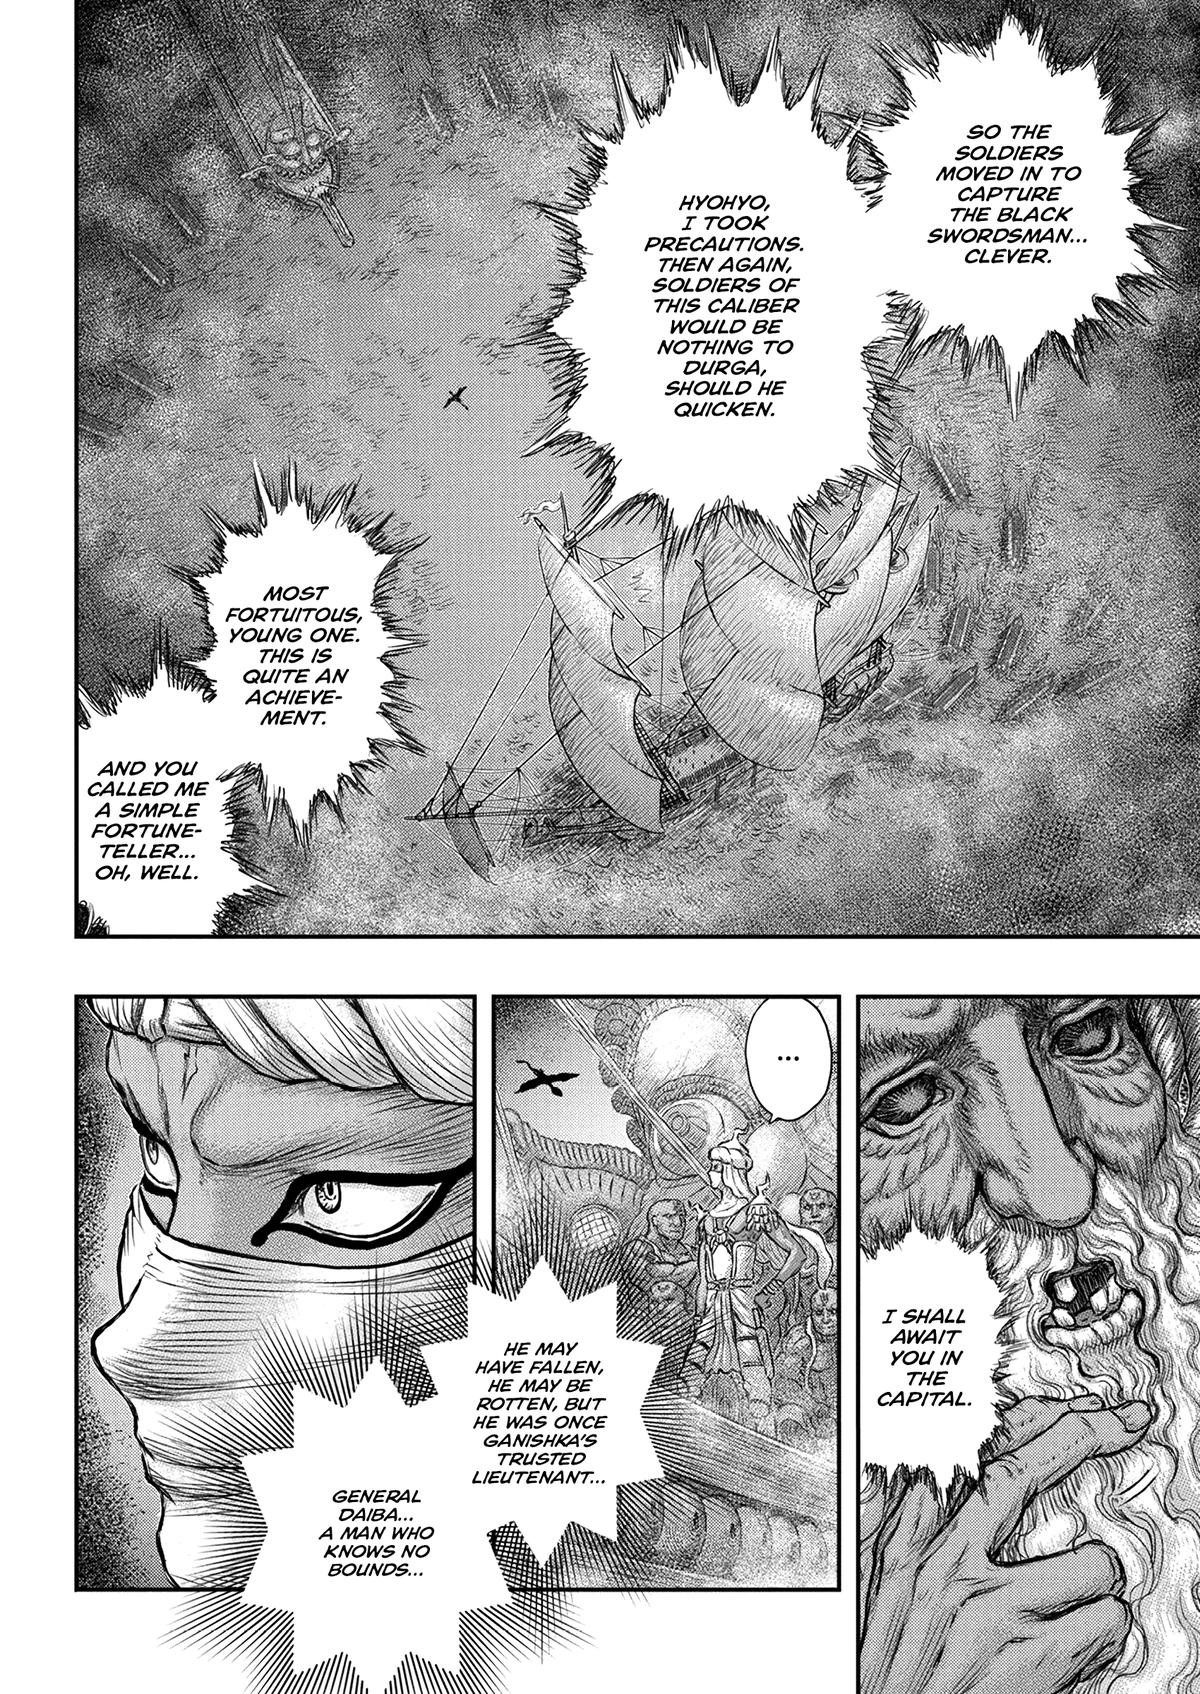 Berserk Manga Chapter 375 image 20